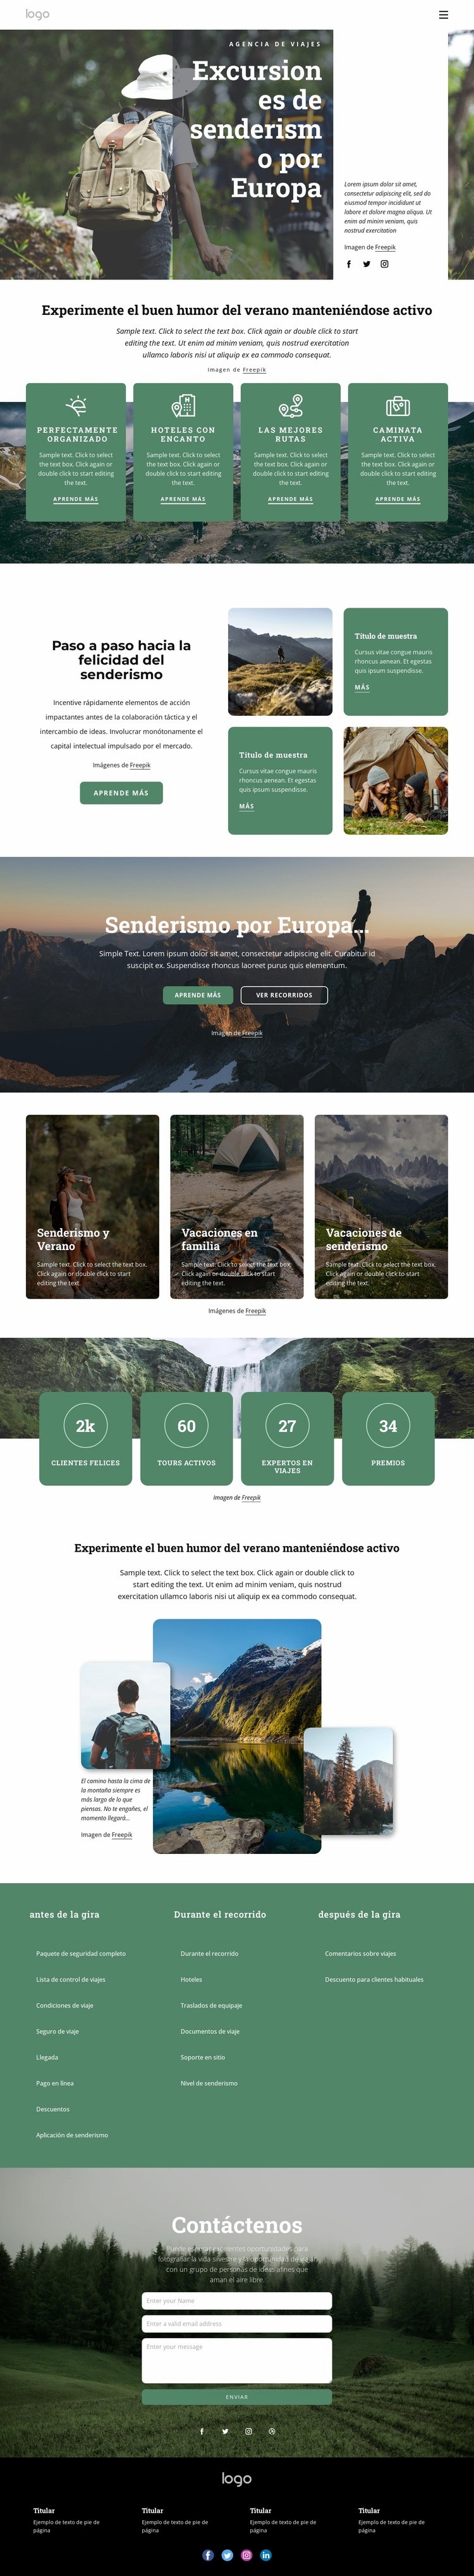 Excursiones de senderismo y trekking en Europa Diseño de páginas web